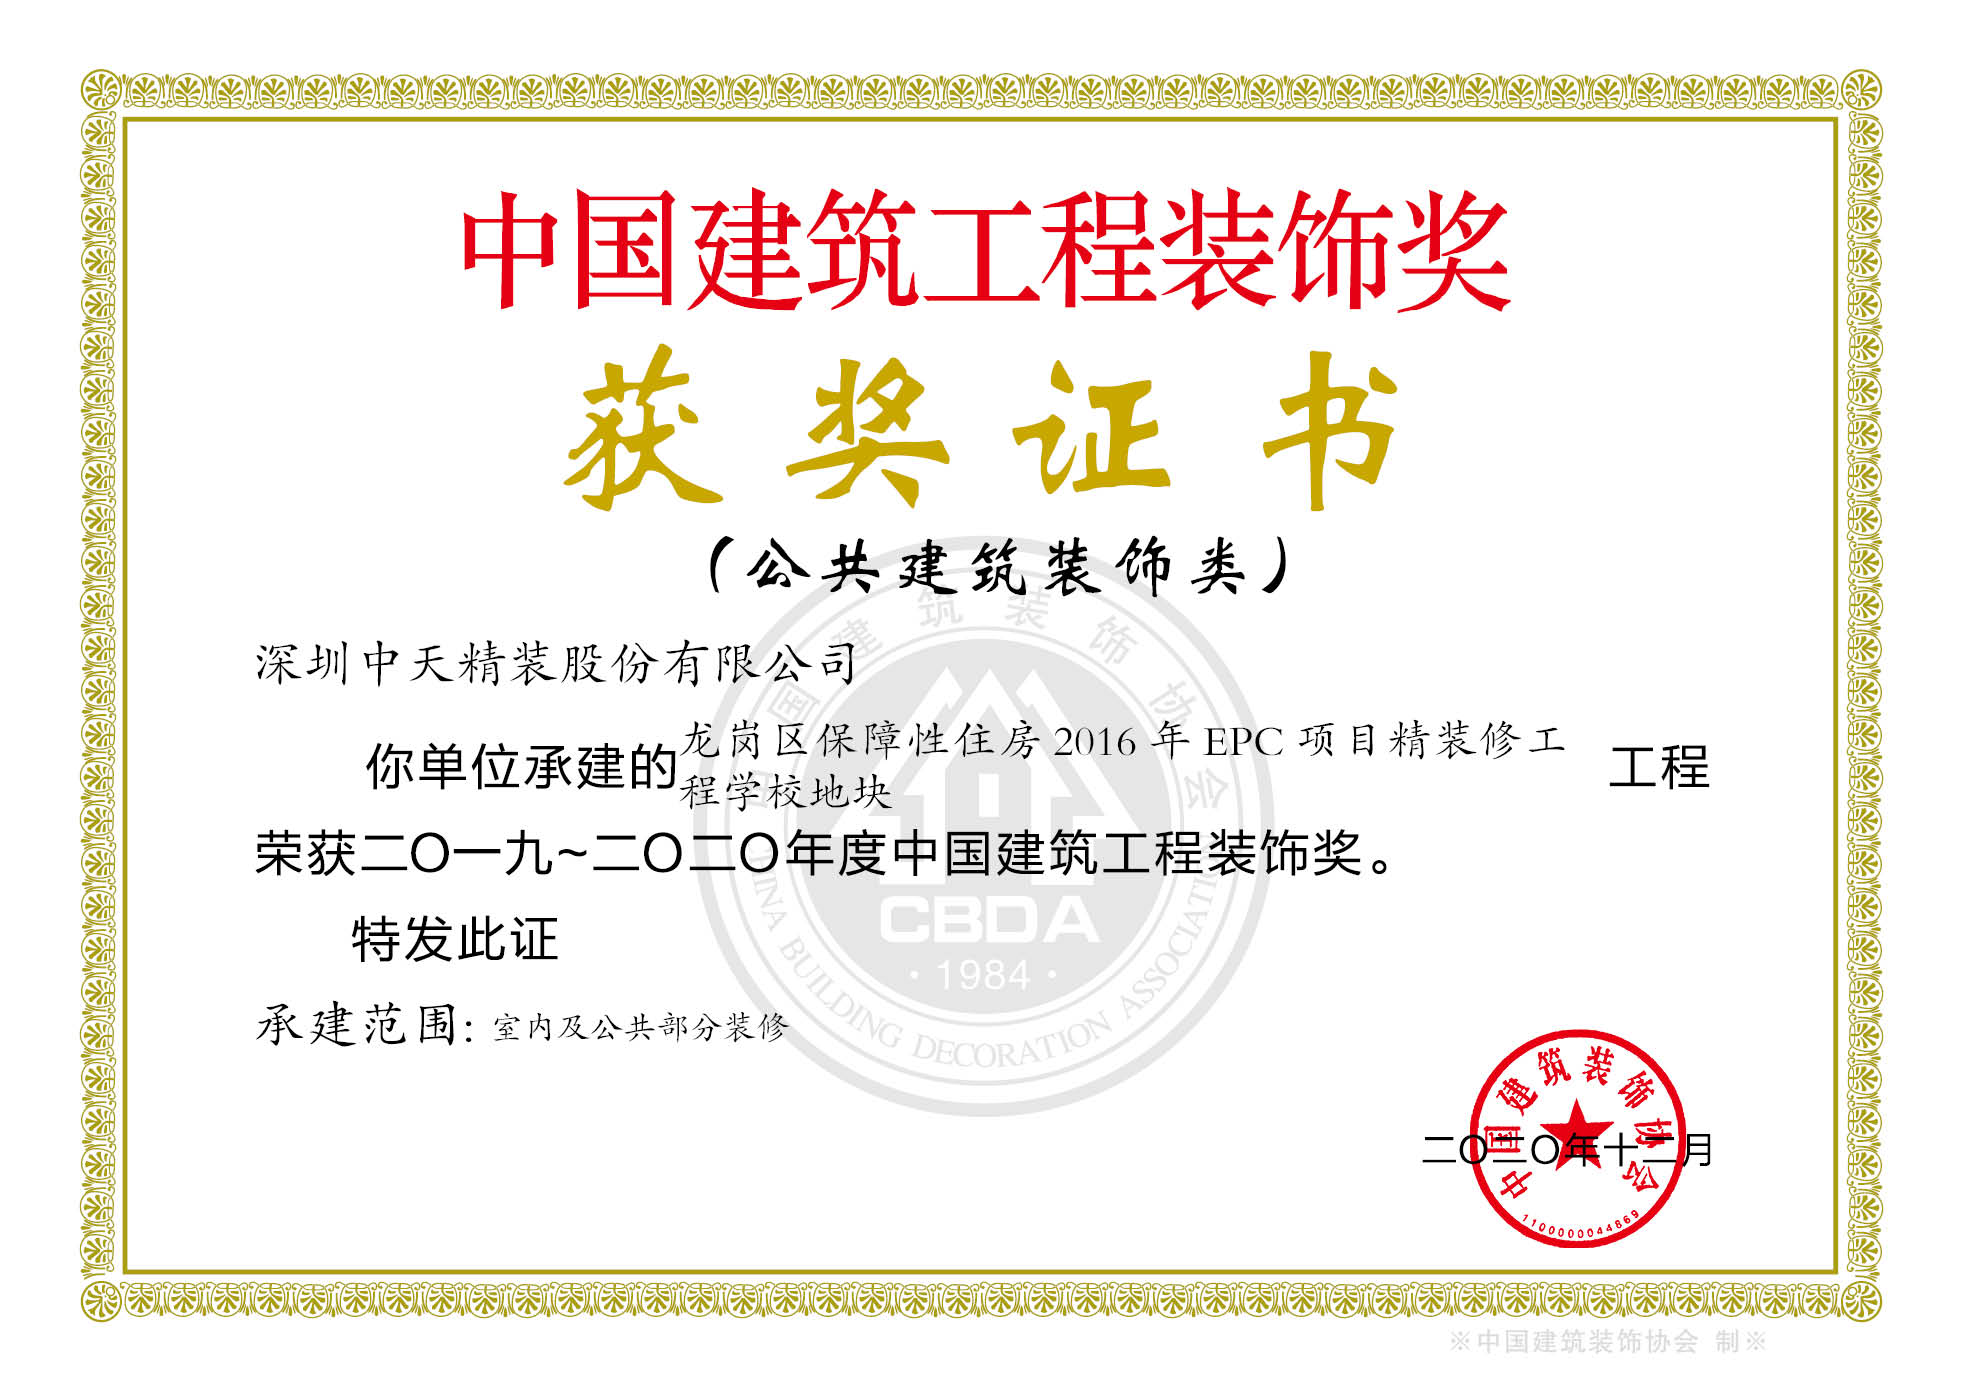 116、2019-2020年度中国建筑工程装饰奖龙岗区保障性房项目-证书.jpg